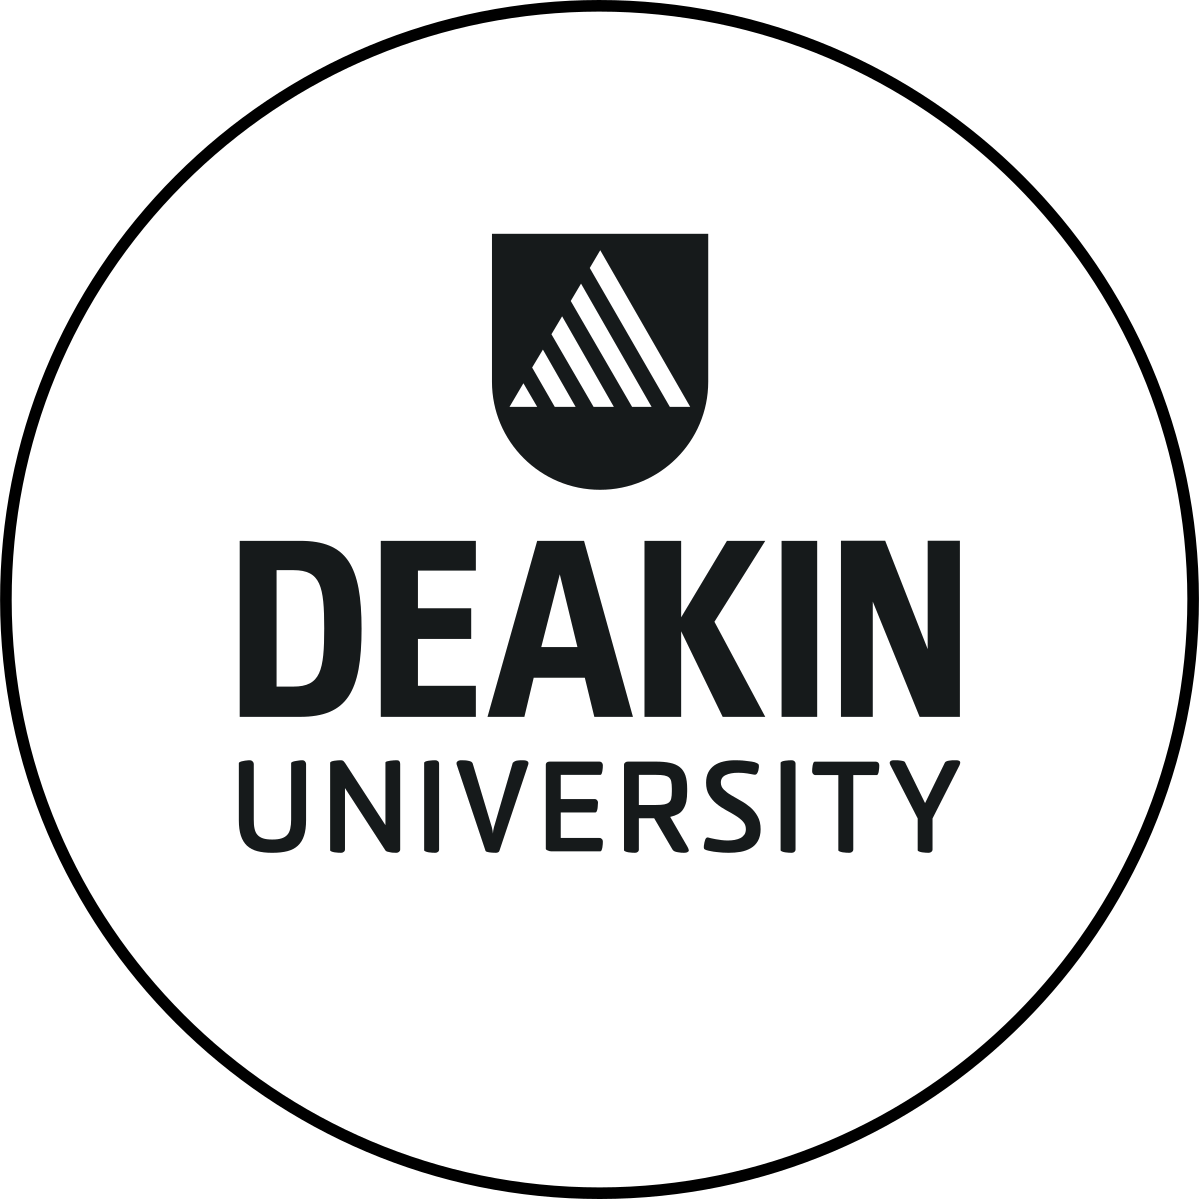 الدراسة في جامعة ديكين - Deakin University